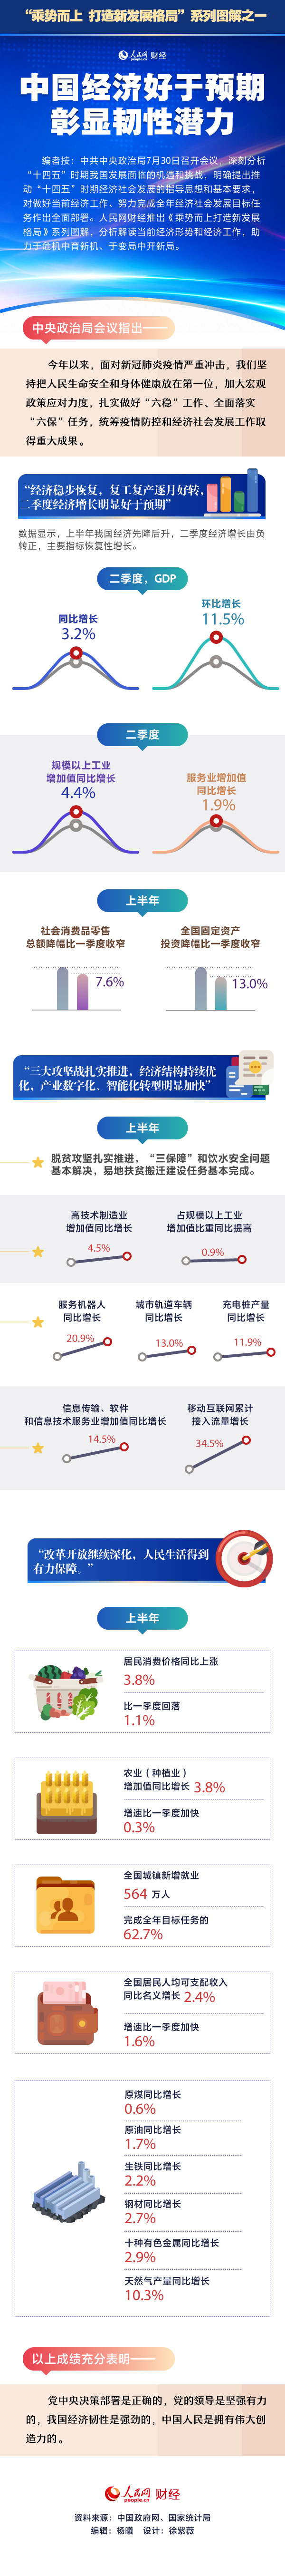 中国经济好于预期 彰显韧性潜力